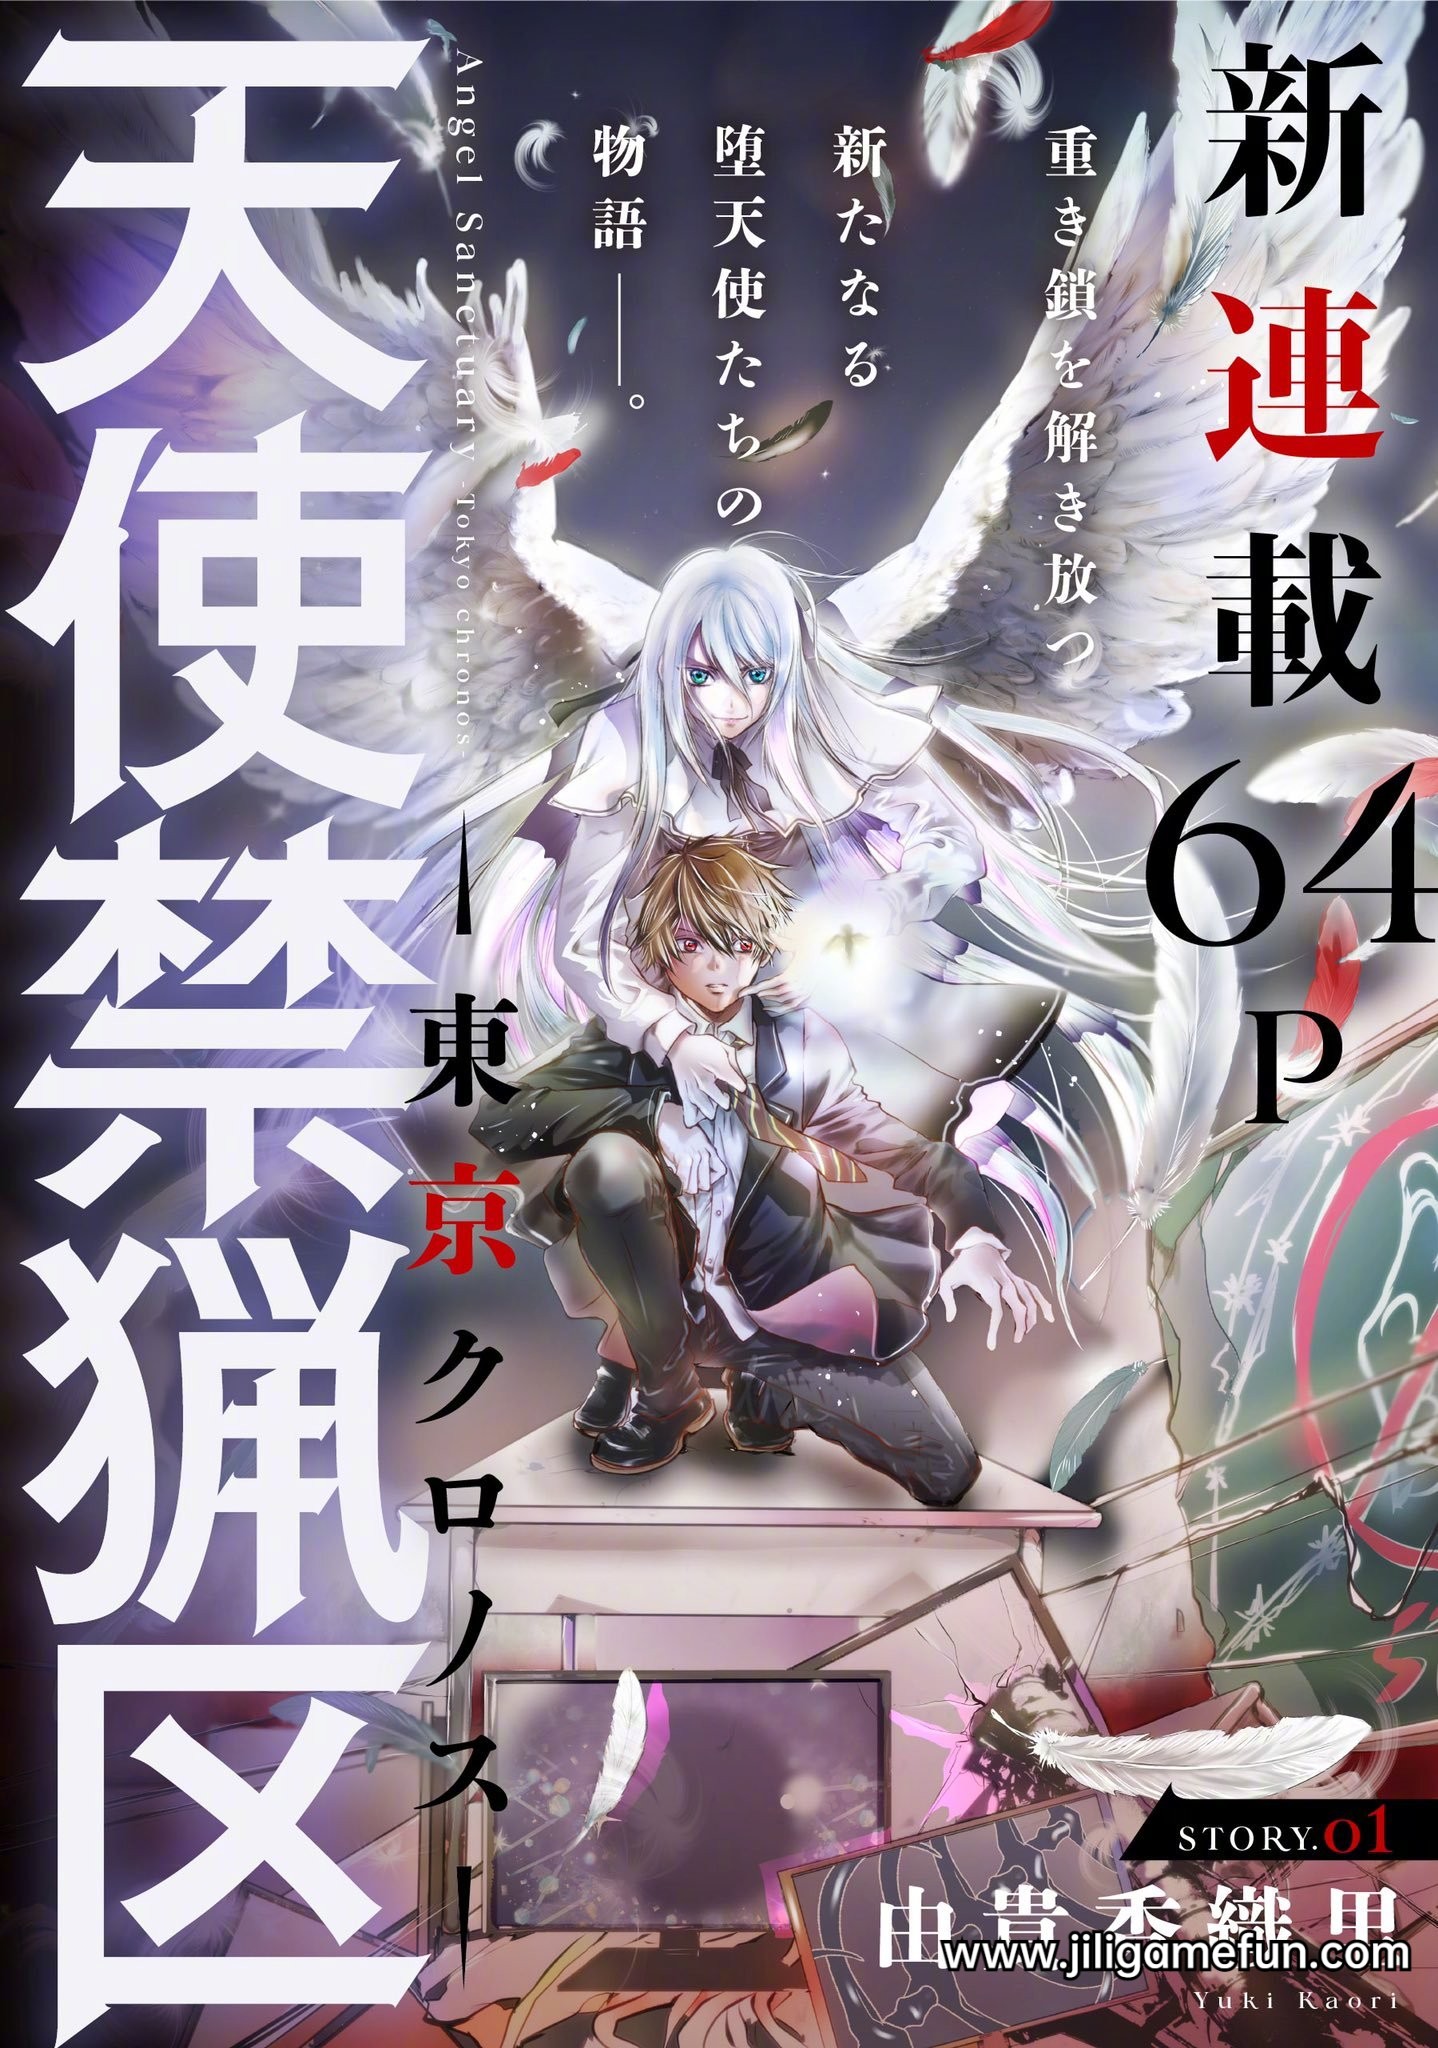 由贵香织里 经典漫画作品《天使禁猎区》将于4月20日开始连载！ ​​​​